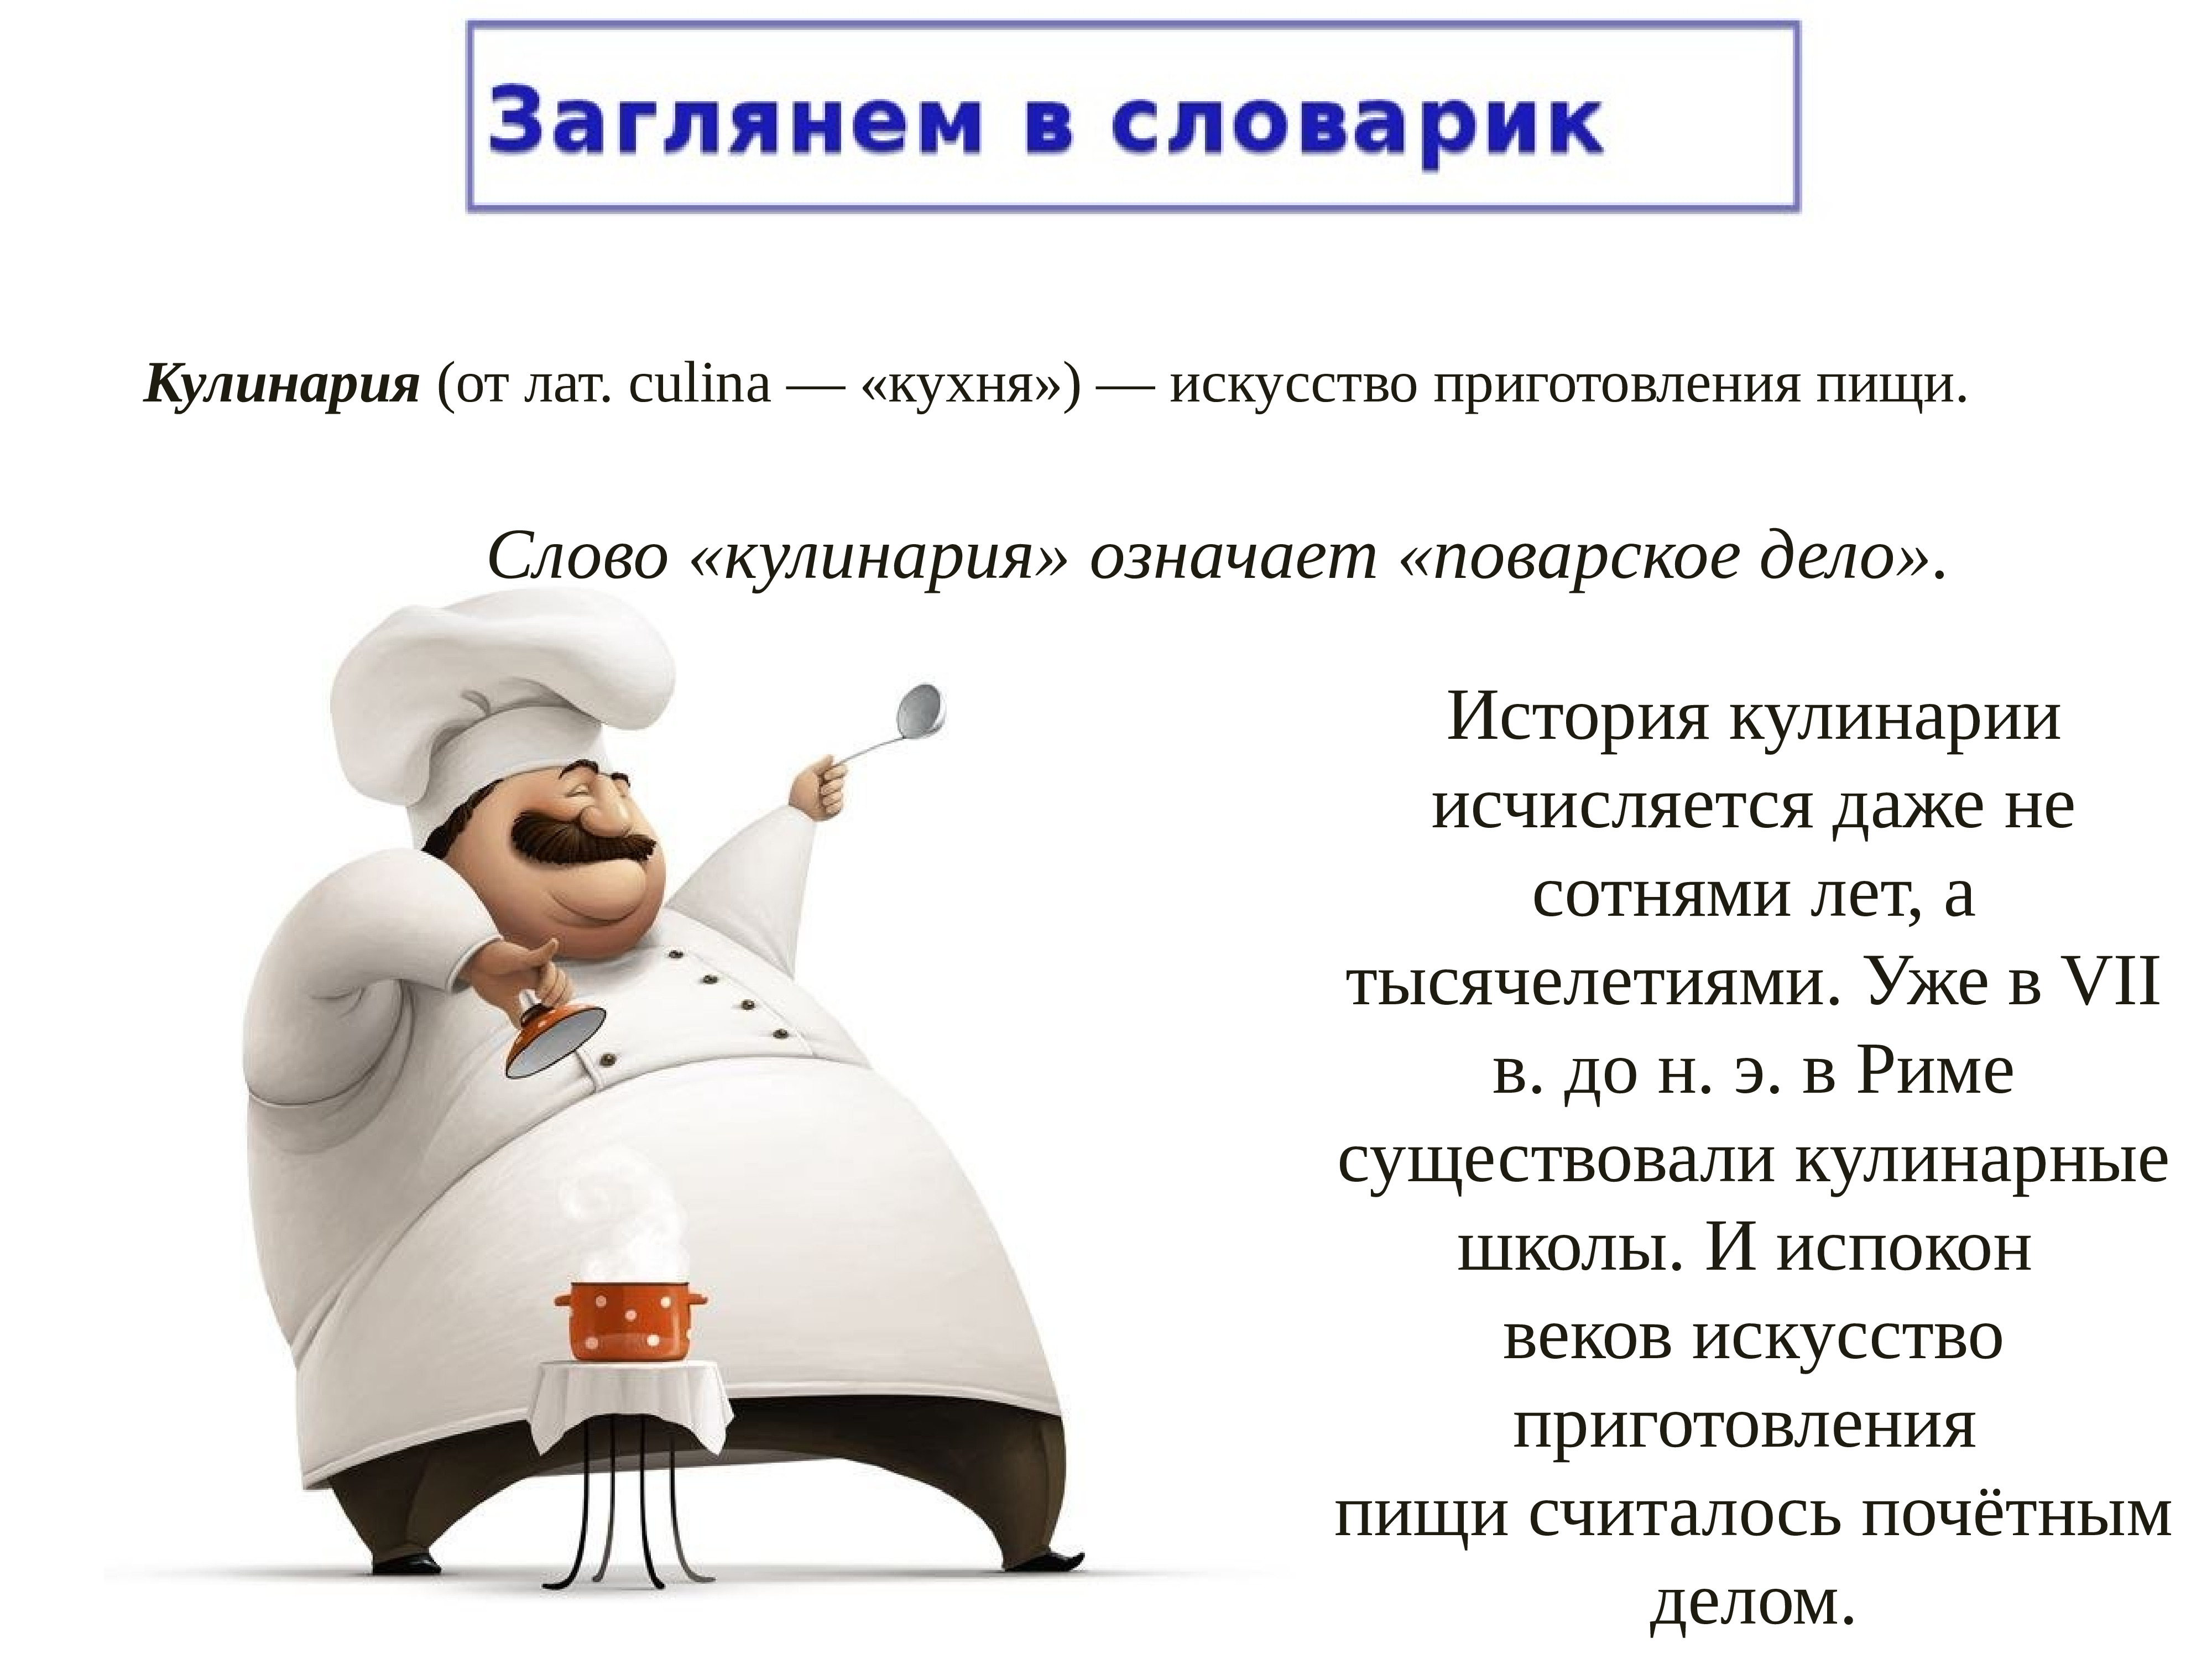 Кулинария значит. История кулинарии. Презентация на тему кулинария. Доклад на тему кулинария. Факты о кулинарии.